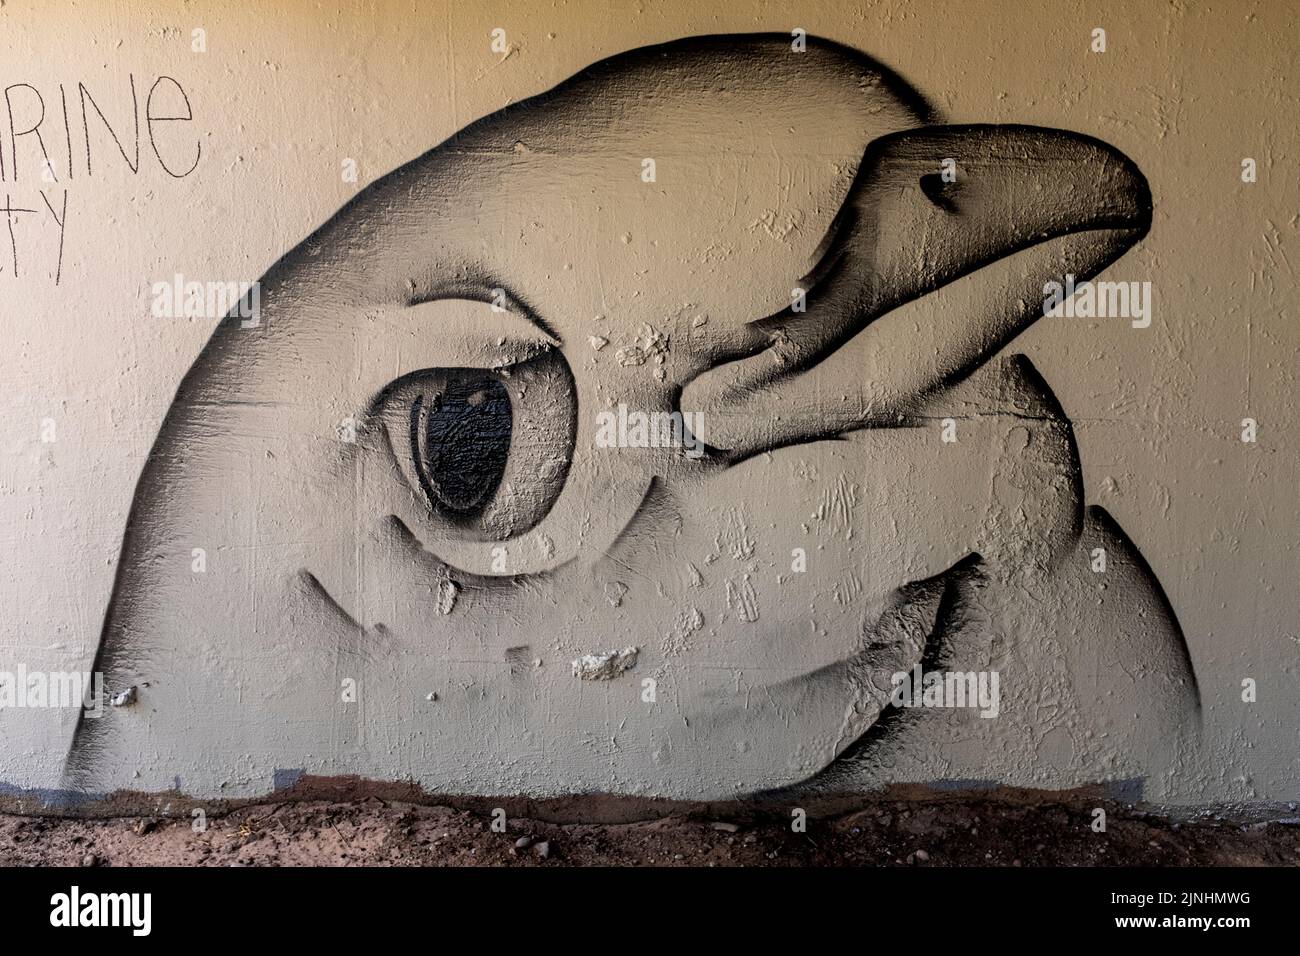 graffiti in Albuquerque, New Mexico Stock Photo